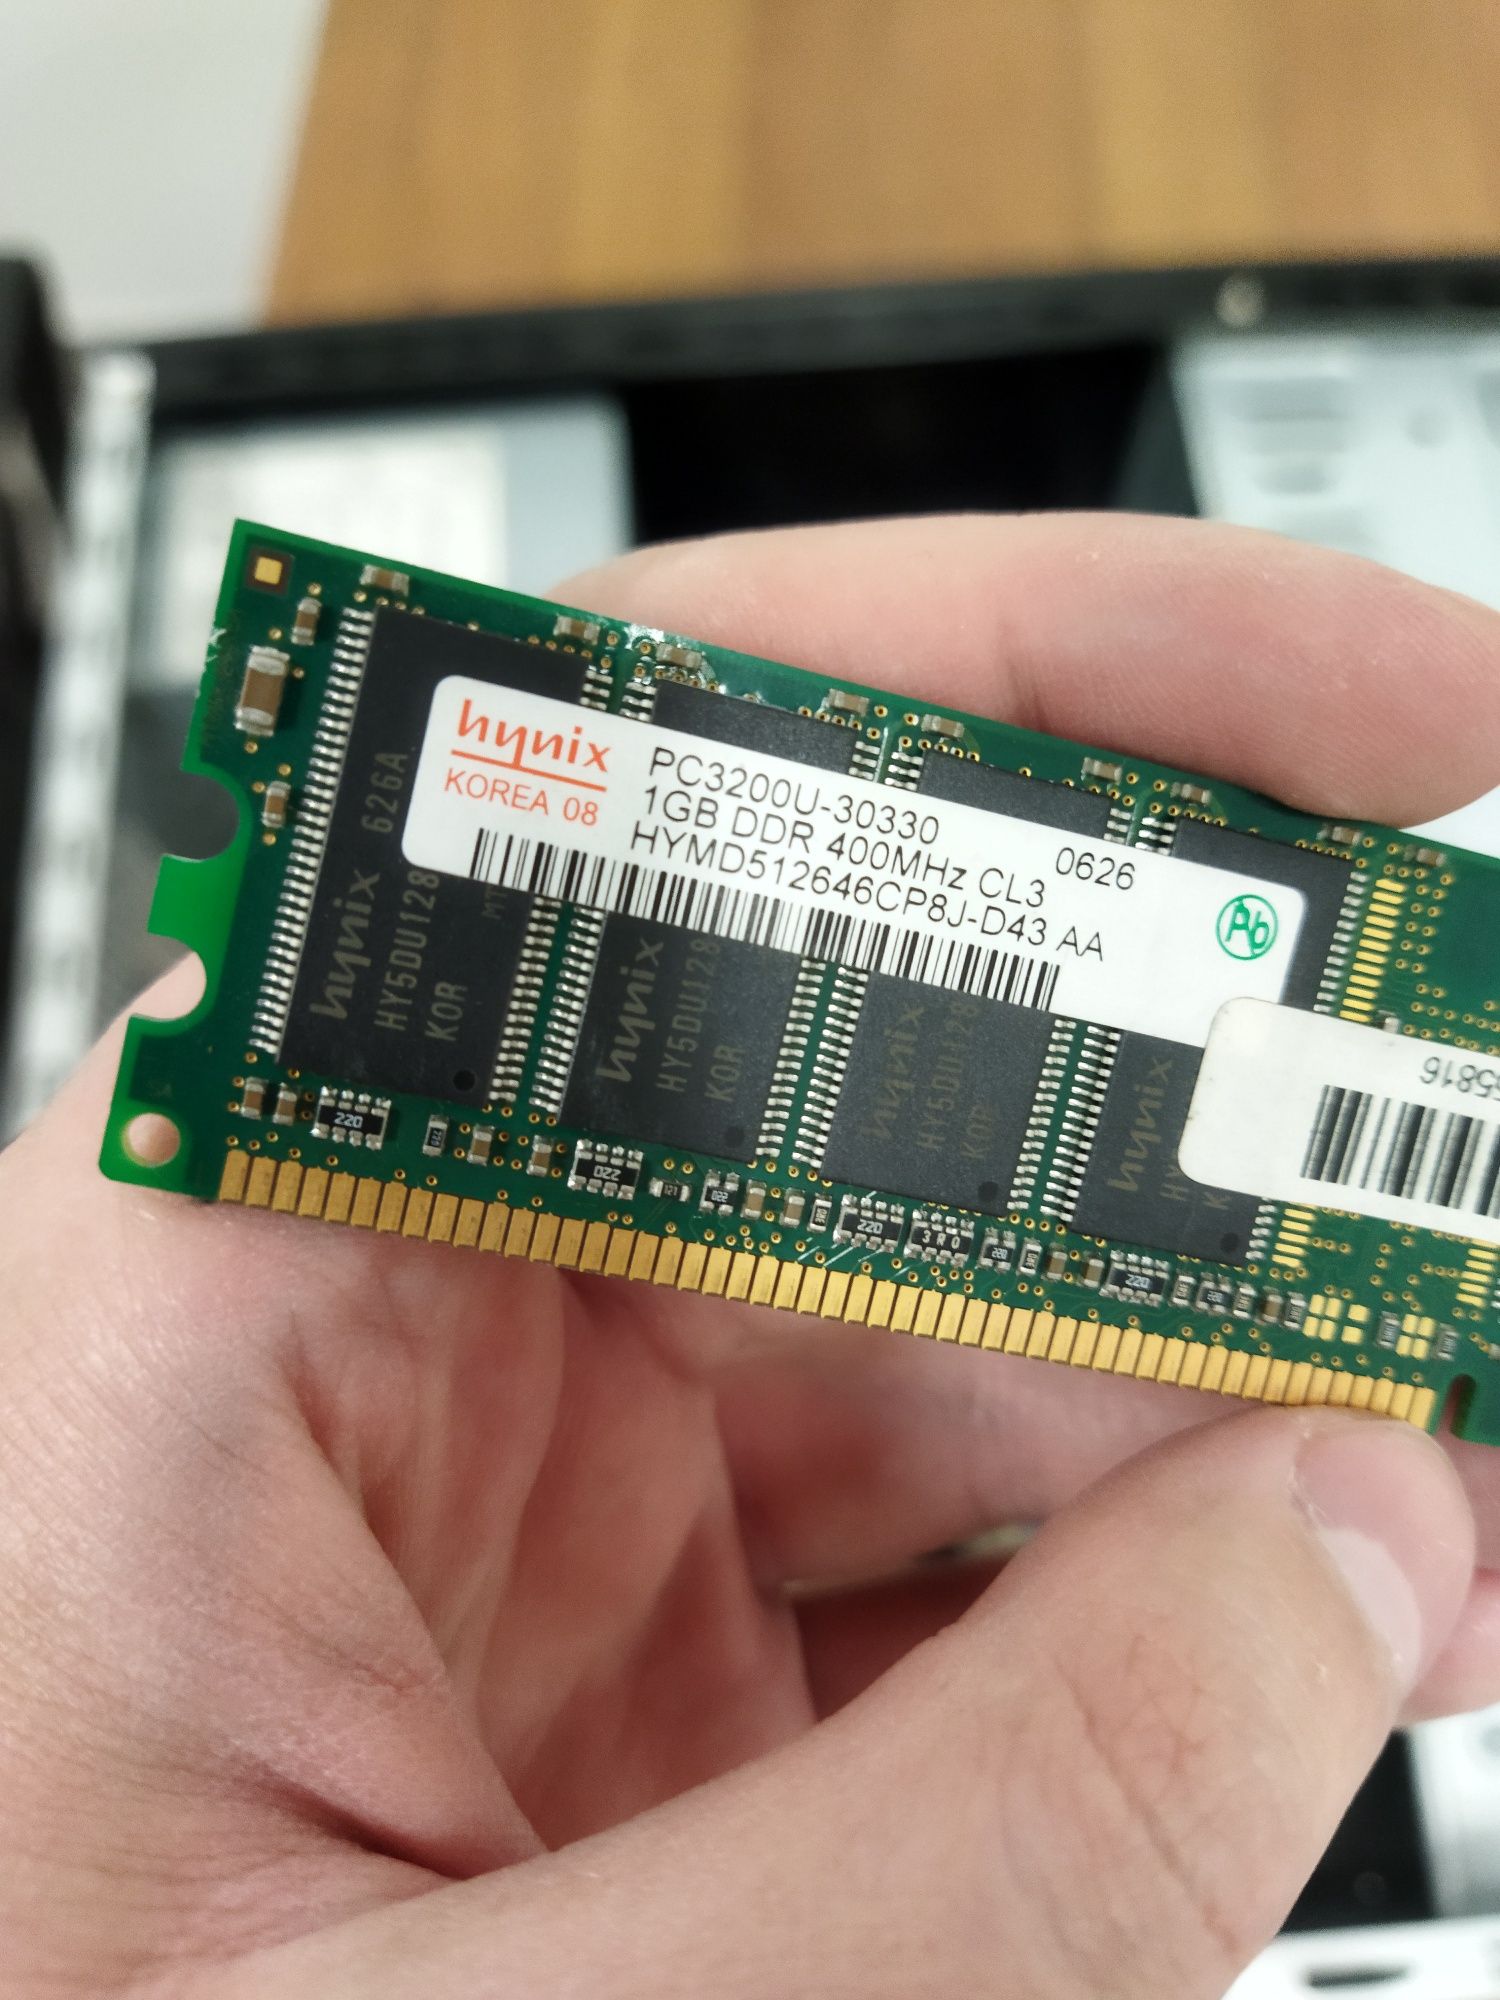 ПК AMD Athlone, RAM 3gb, HDD 250gb